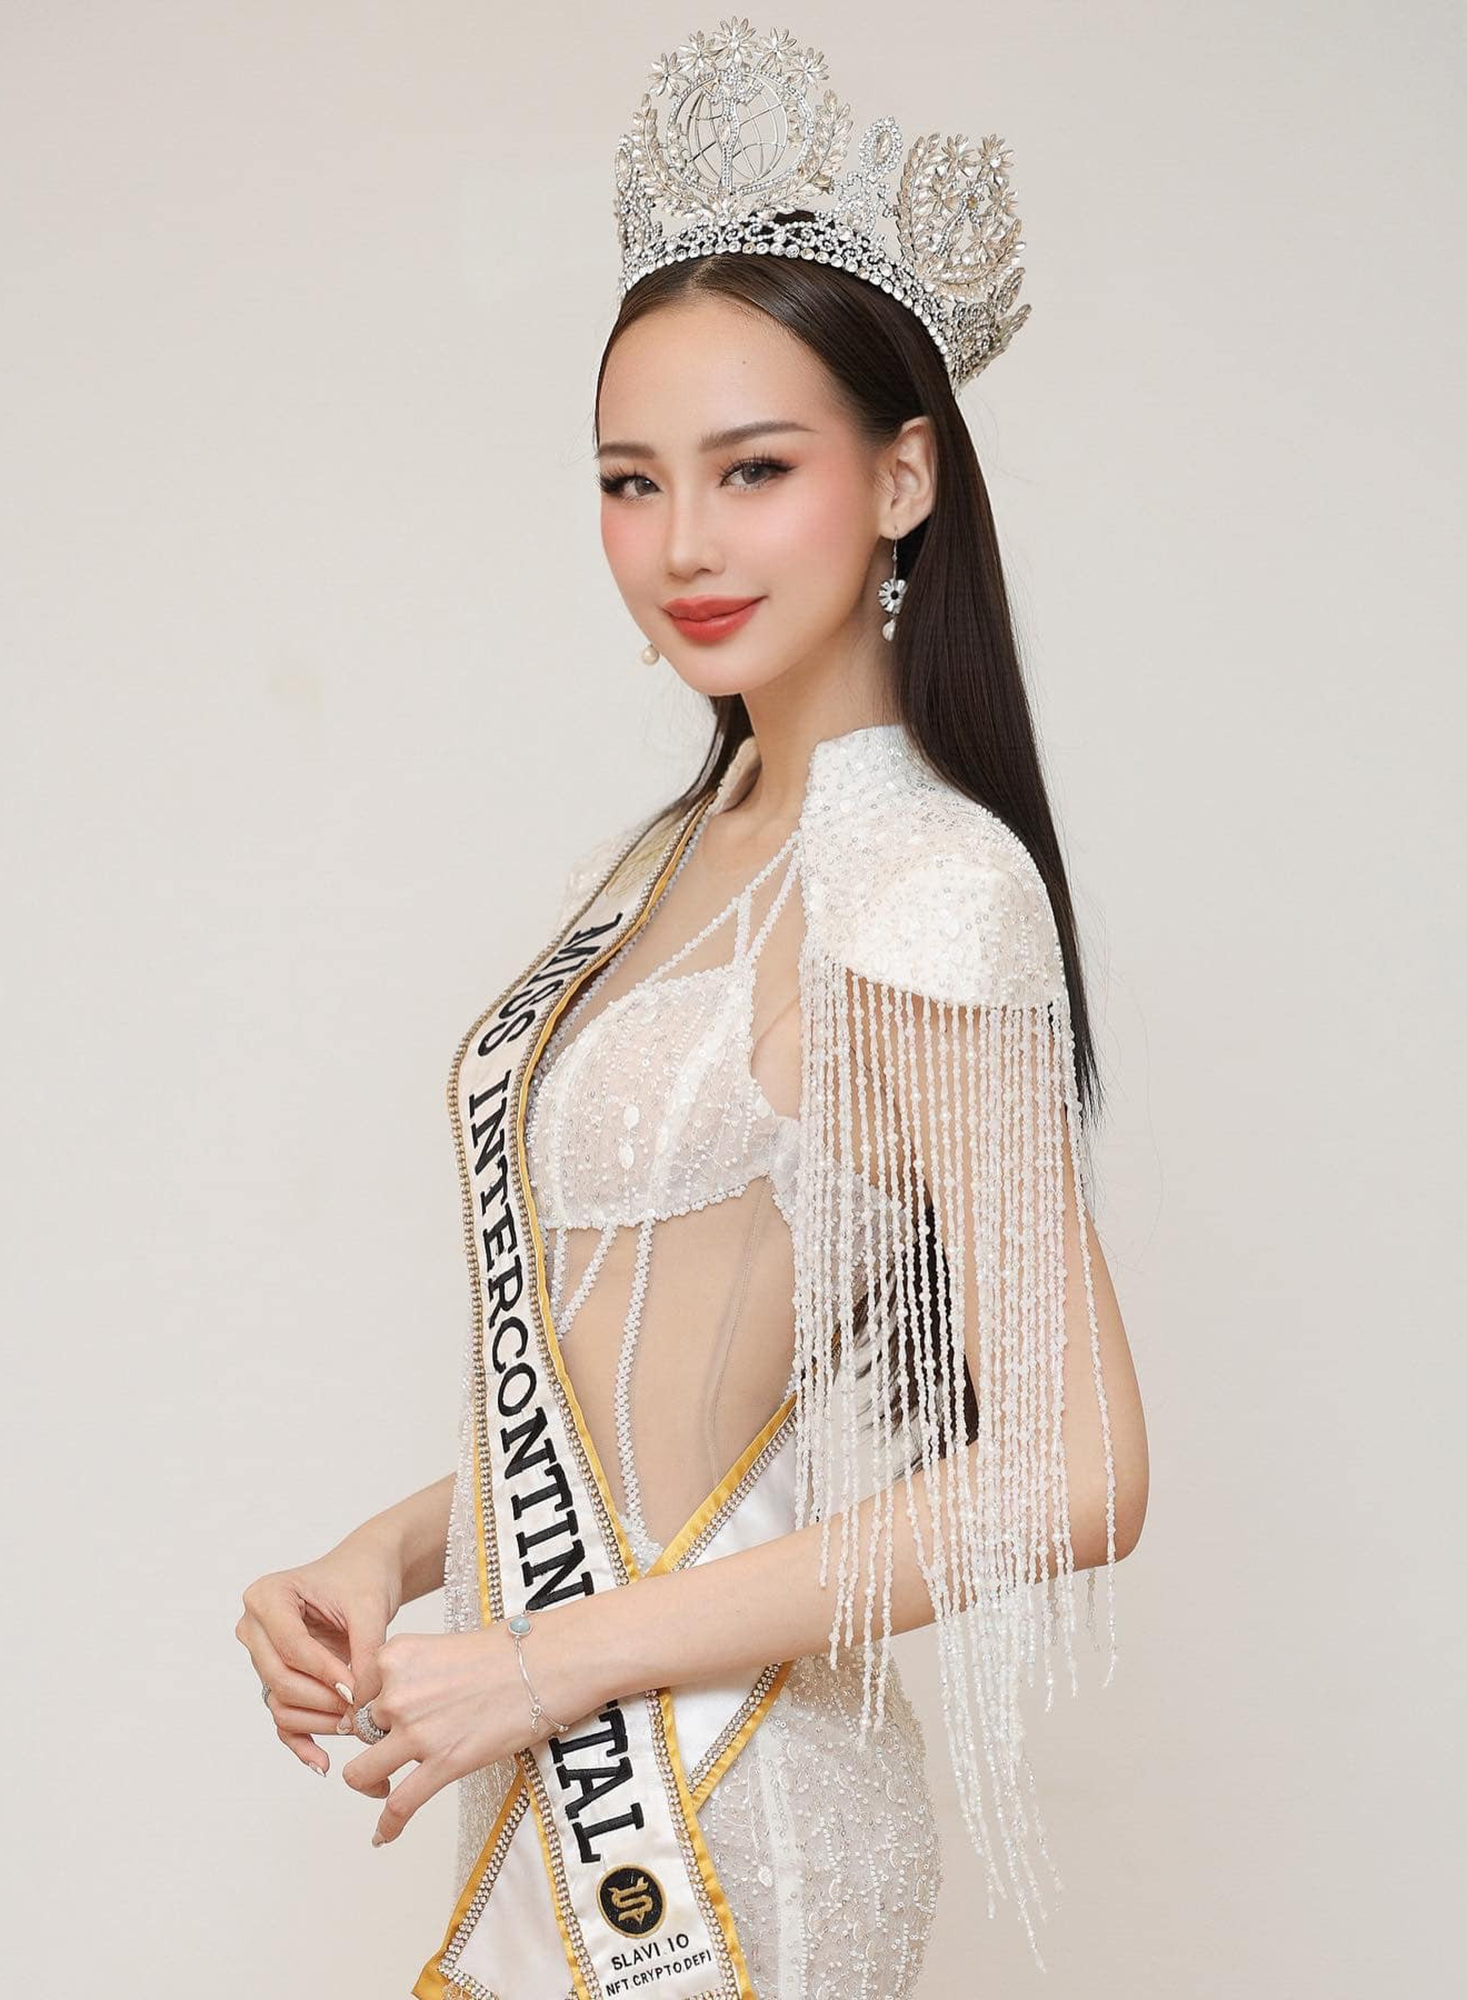 Hoa hậu Lê Nguyễn Bảo Ngọc: Sứ mệnh của tôi chưa dừng lại - Ảnh 2.